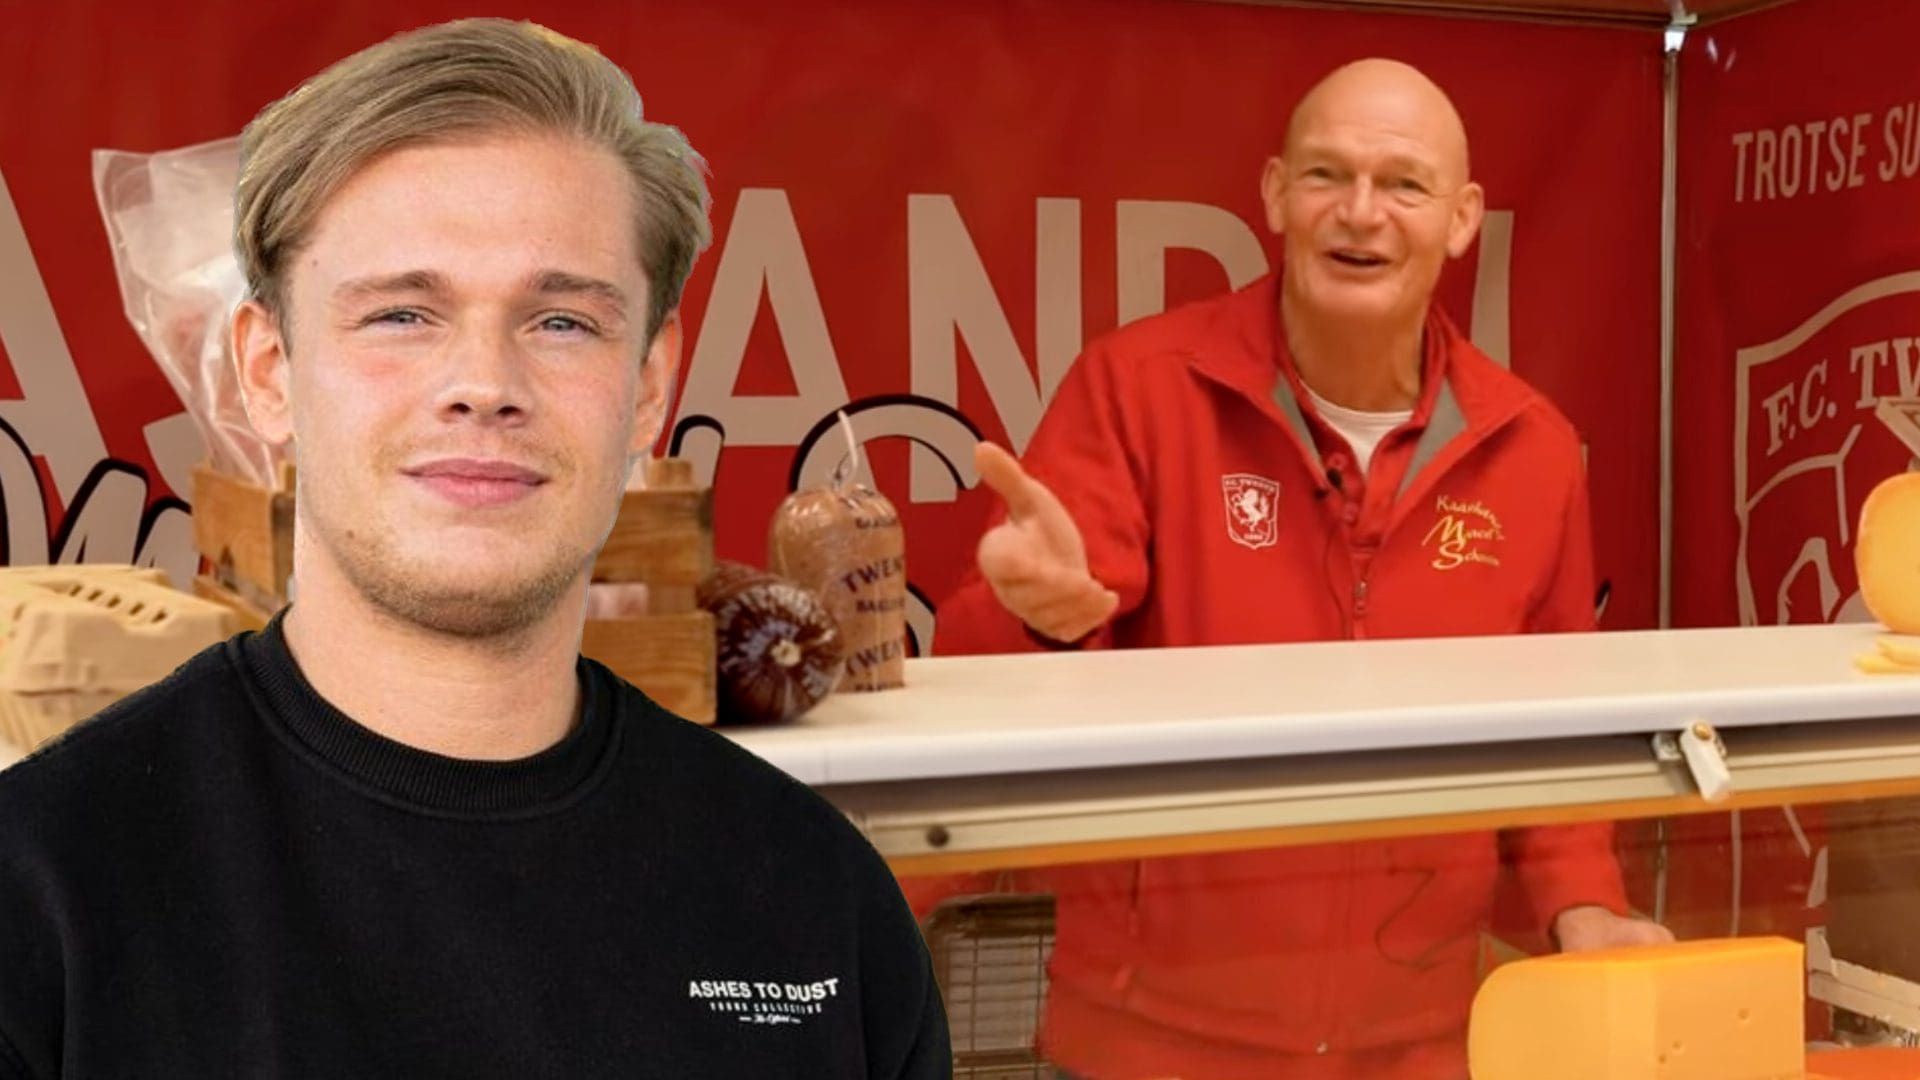 Marcel Schouten is trots op zijn zoon: 'maar Jan Roos is geen vriend van mij'